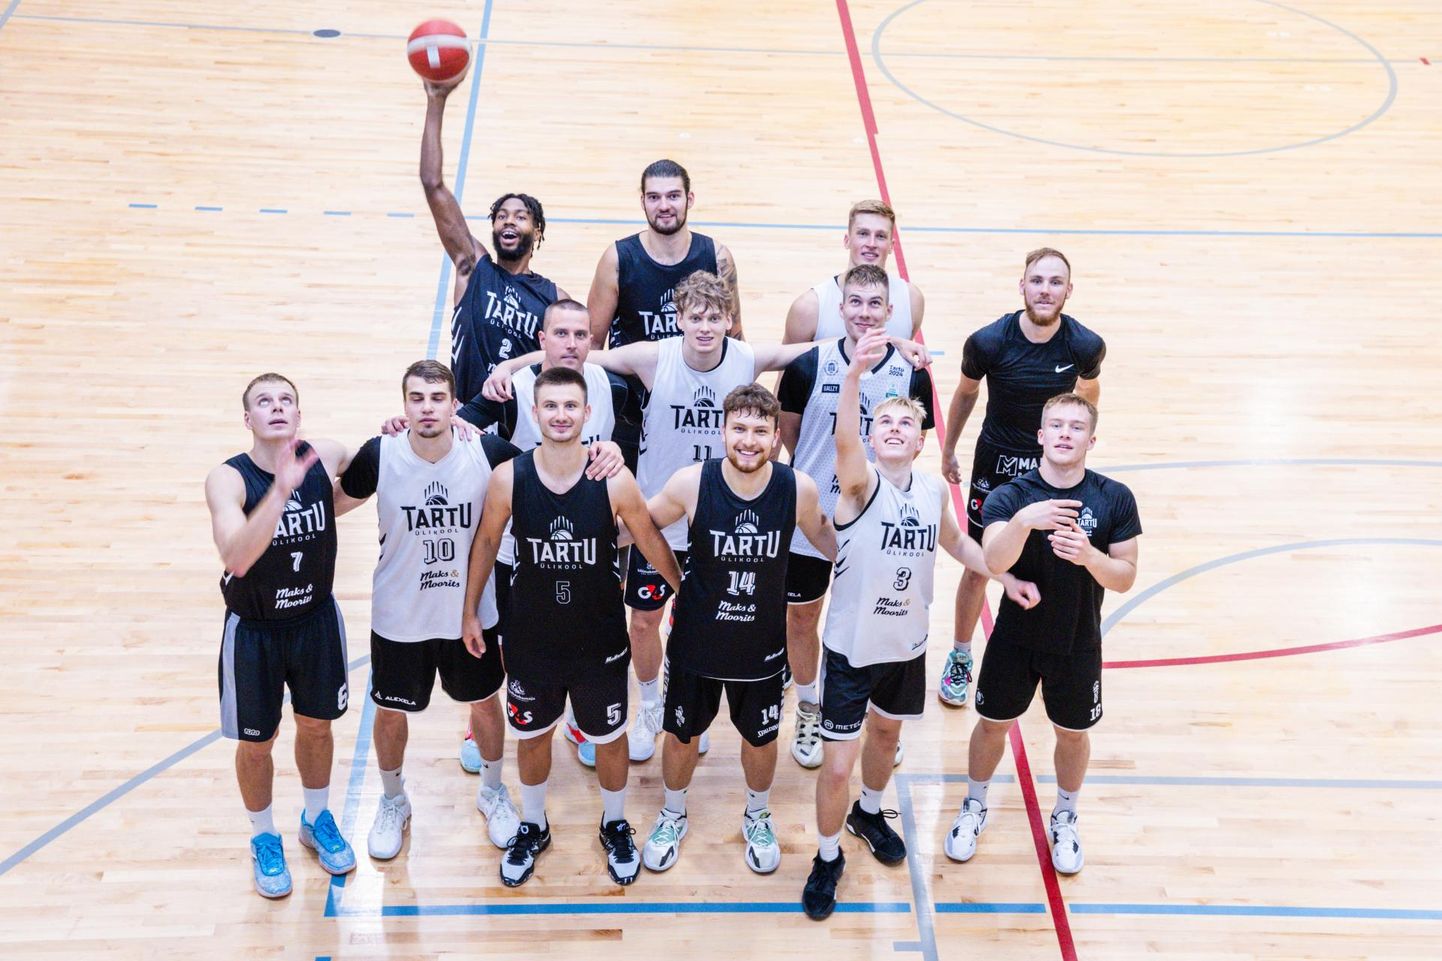 Tartu Ülikool Maks ja Mooritsa korvpallimeeskond on komplekteeritud ning treenib veel Käärikul. Küsimusele, kas meeskond hakkab mängima agressiivset, kaitsvat või söötuderohket korvpalli, vastas peatreener, et kõike seda korraga.